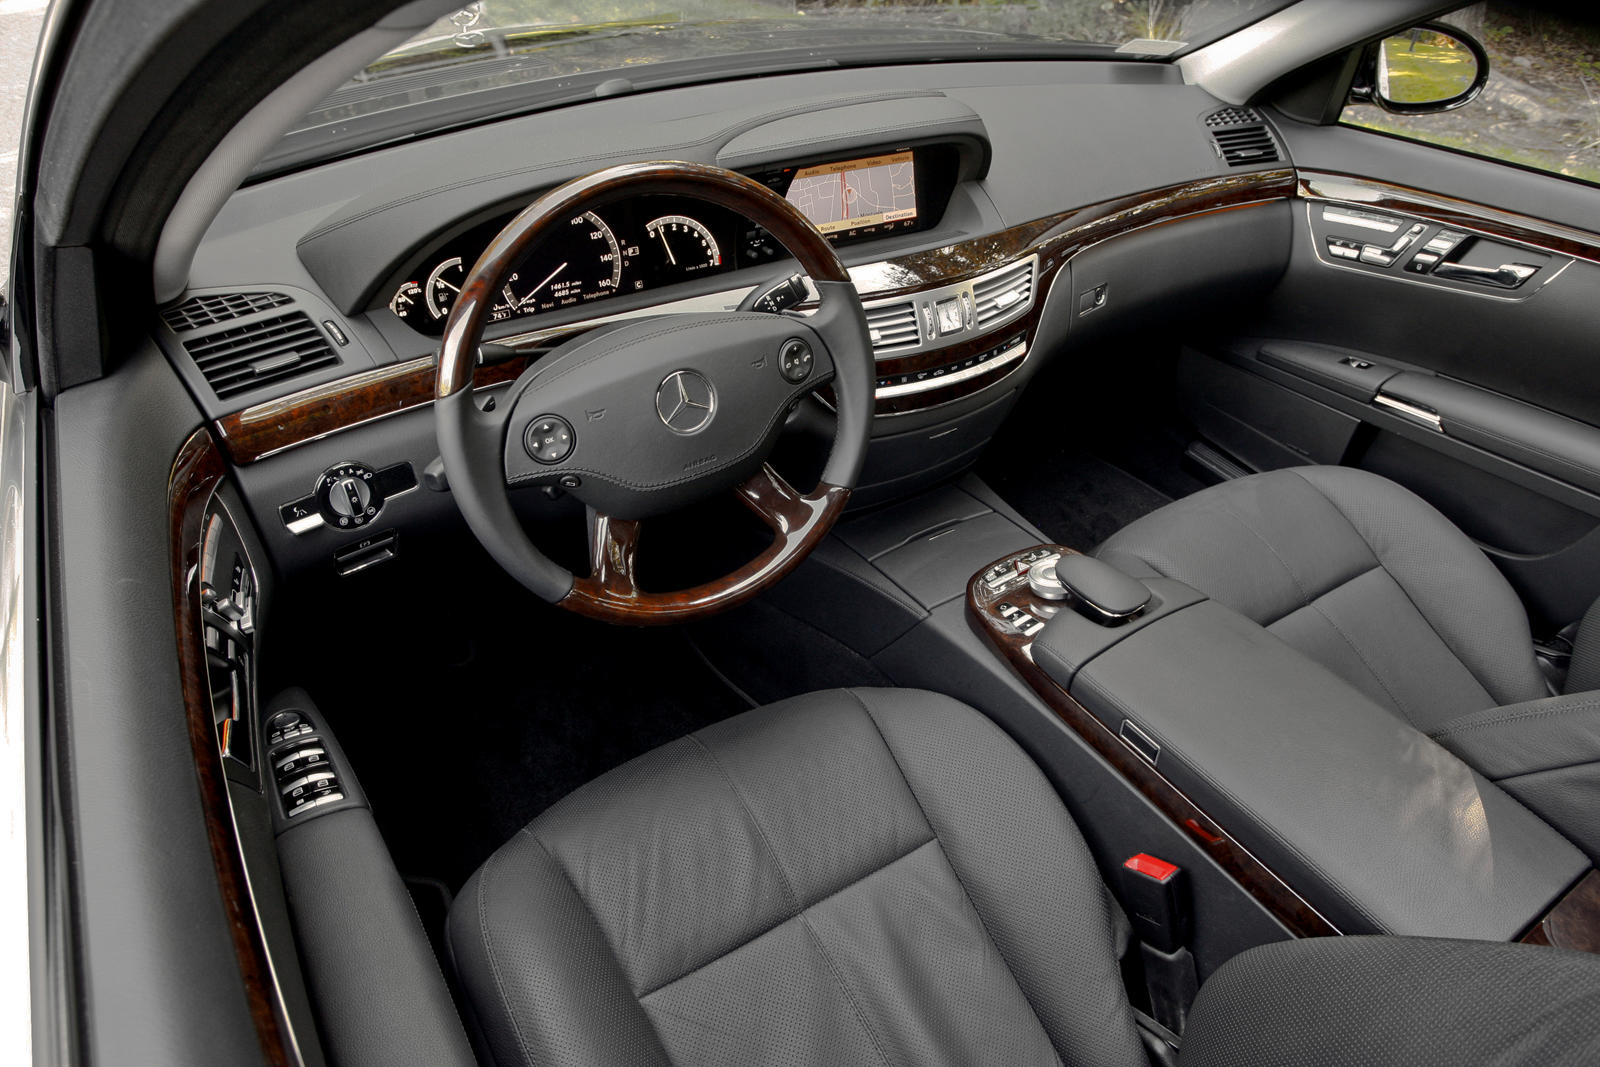 2008 Mercedes-Benz S-Class Sedan Interior Photos | CarBuzz